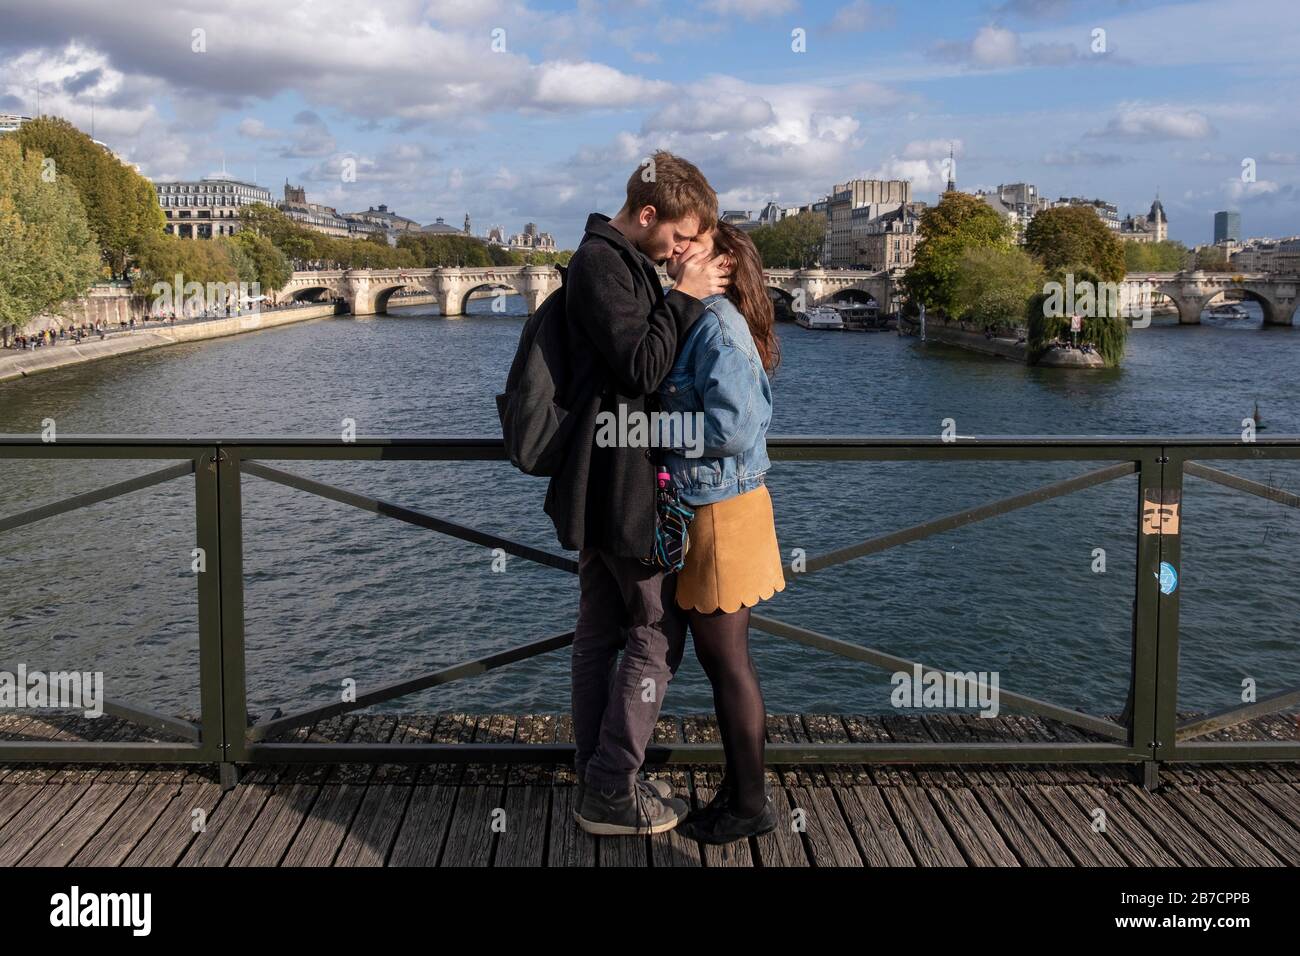 Un jeune couple amoureux s'embrassant passionément sur le pont des amoureux des arts se verrouille à Paris, France, Europe Banque D'Images